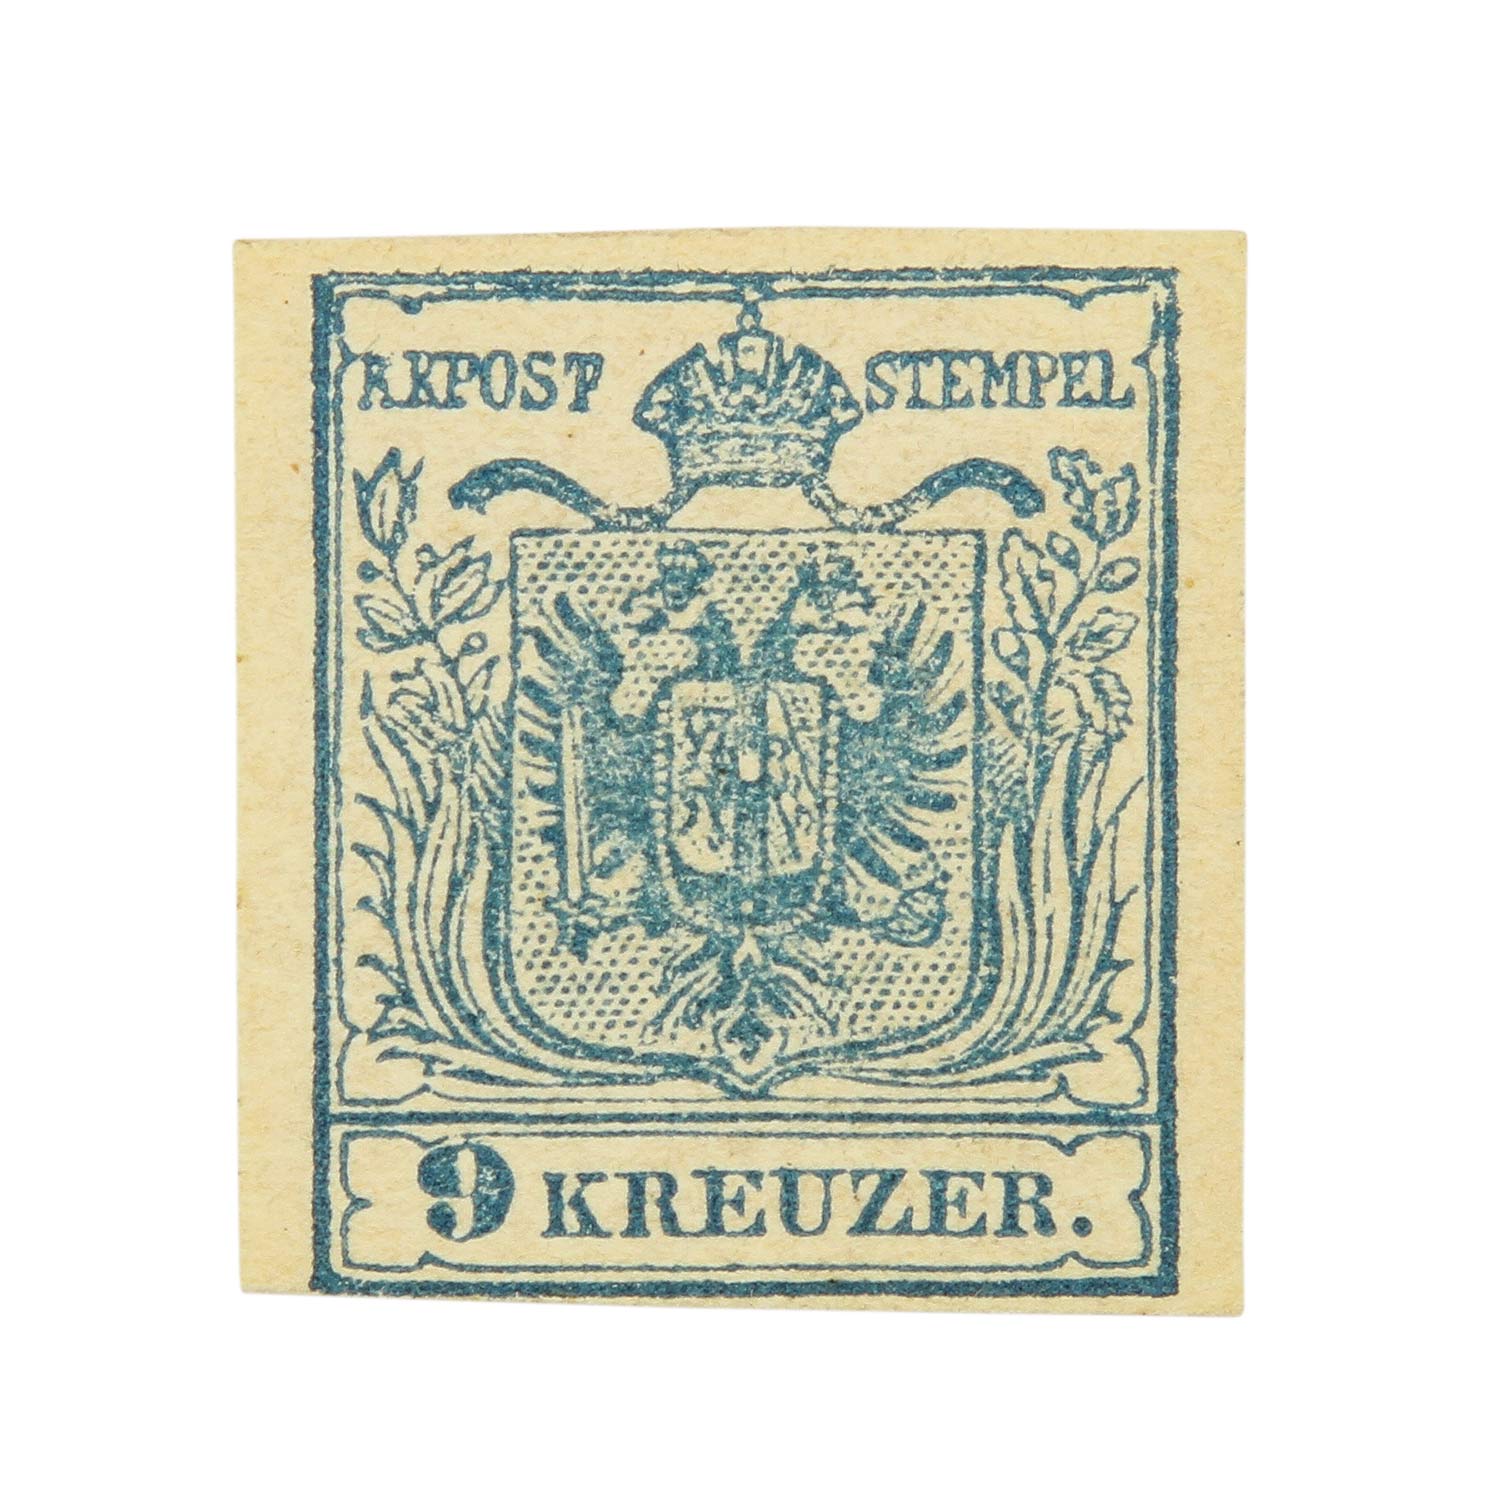 Österreich - 1850, 9 Kreuzer hellblau gefalzt, Maschinenpapier, dreiseitig vollrandig, unten links